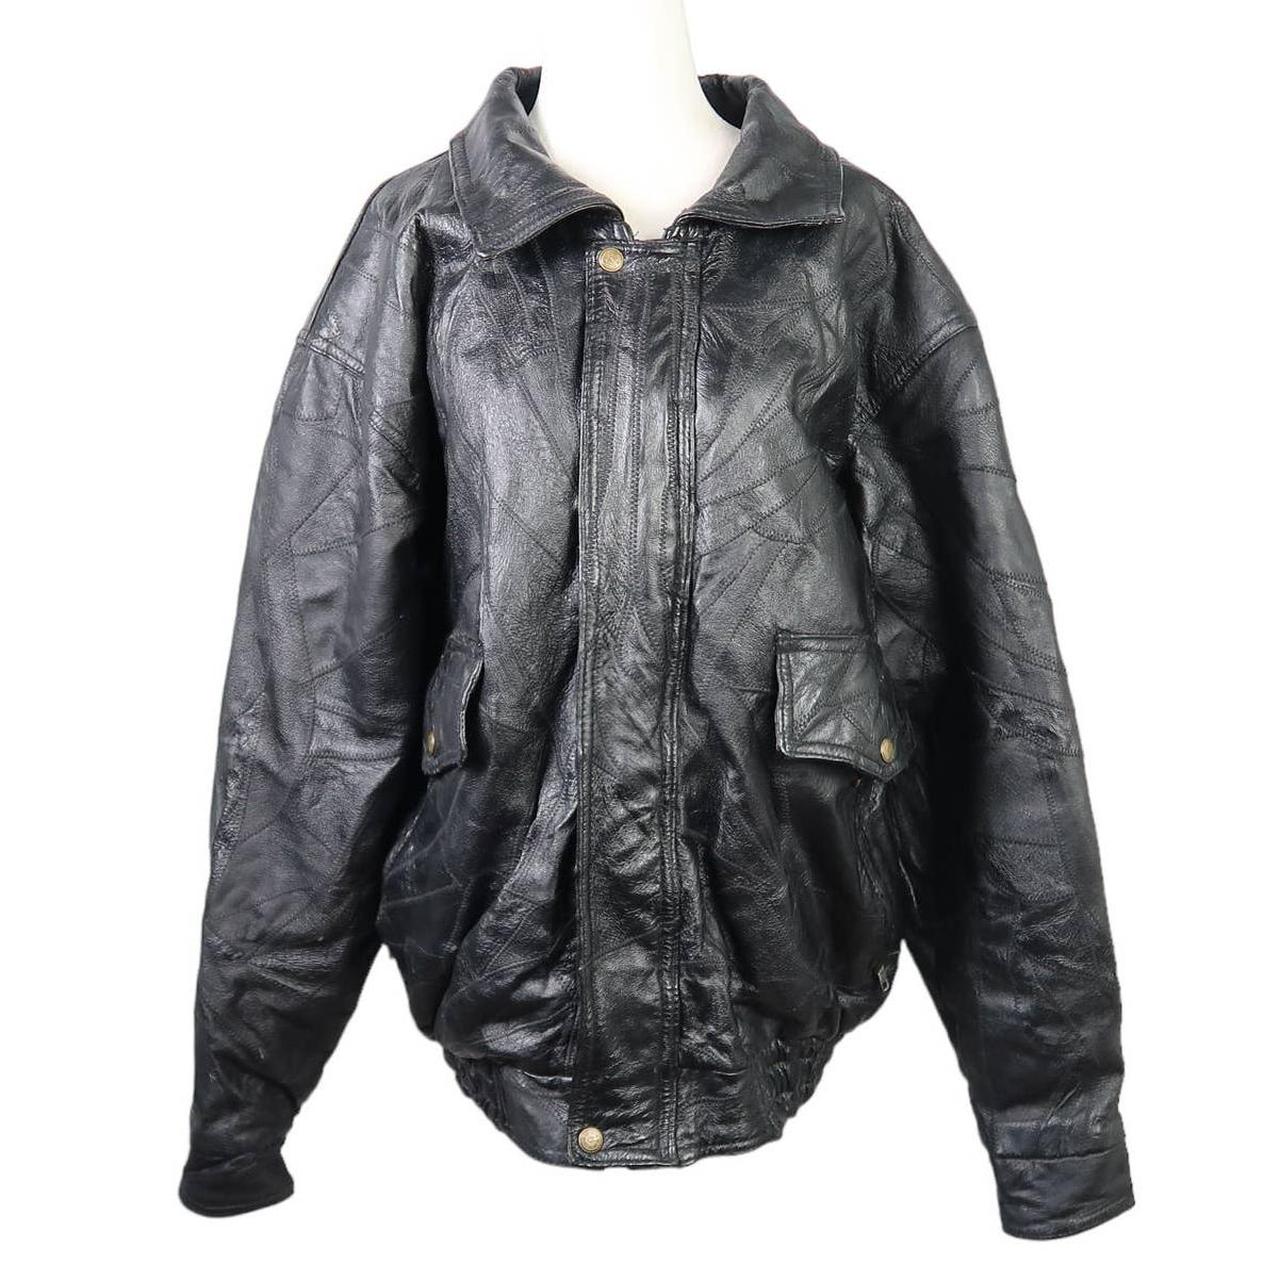 Vintage 90s Men's Black Patchwork Leather Bomber... - Depop